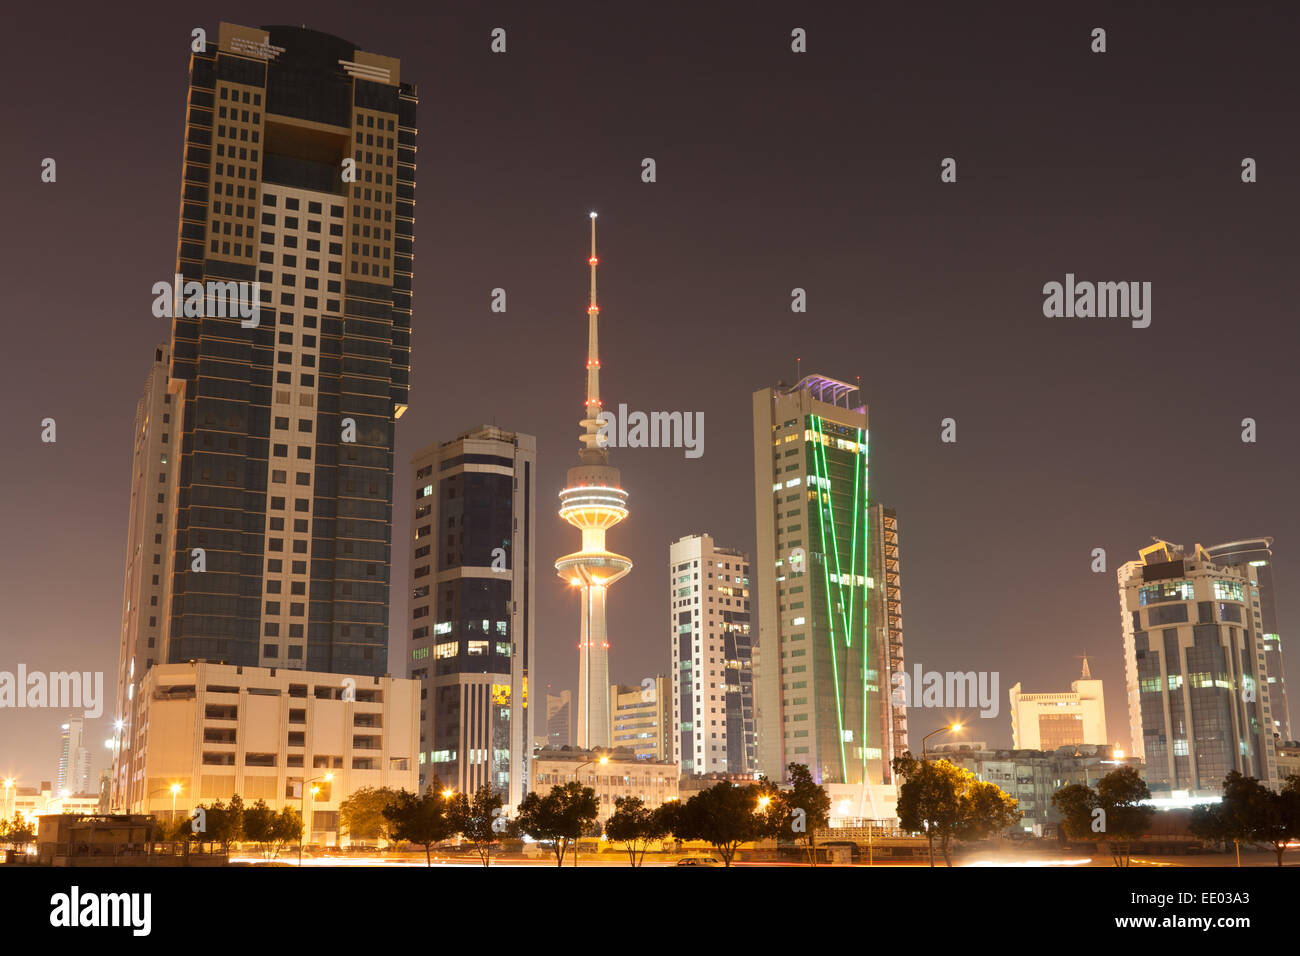 Skyline of Kuwait City illuminated at night, Middle East Stock Photo